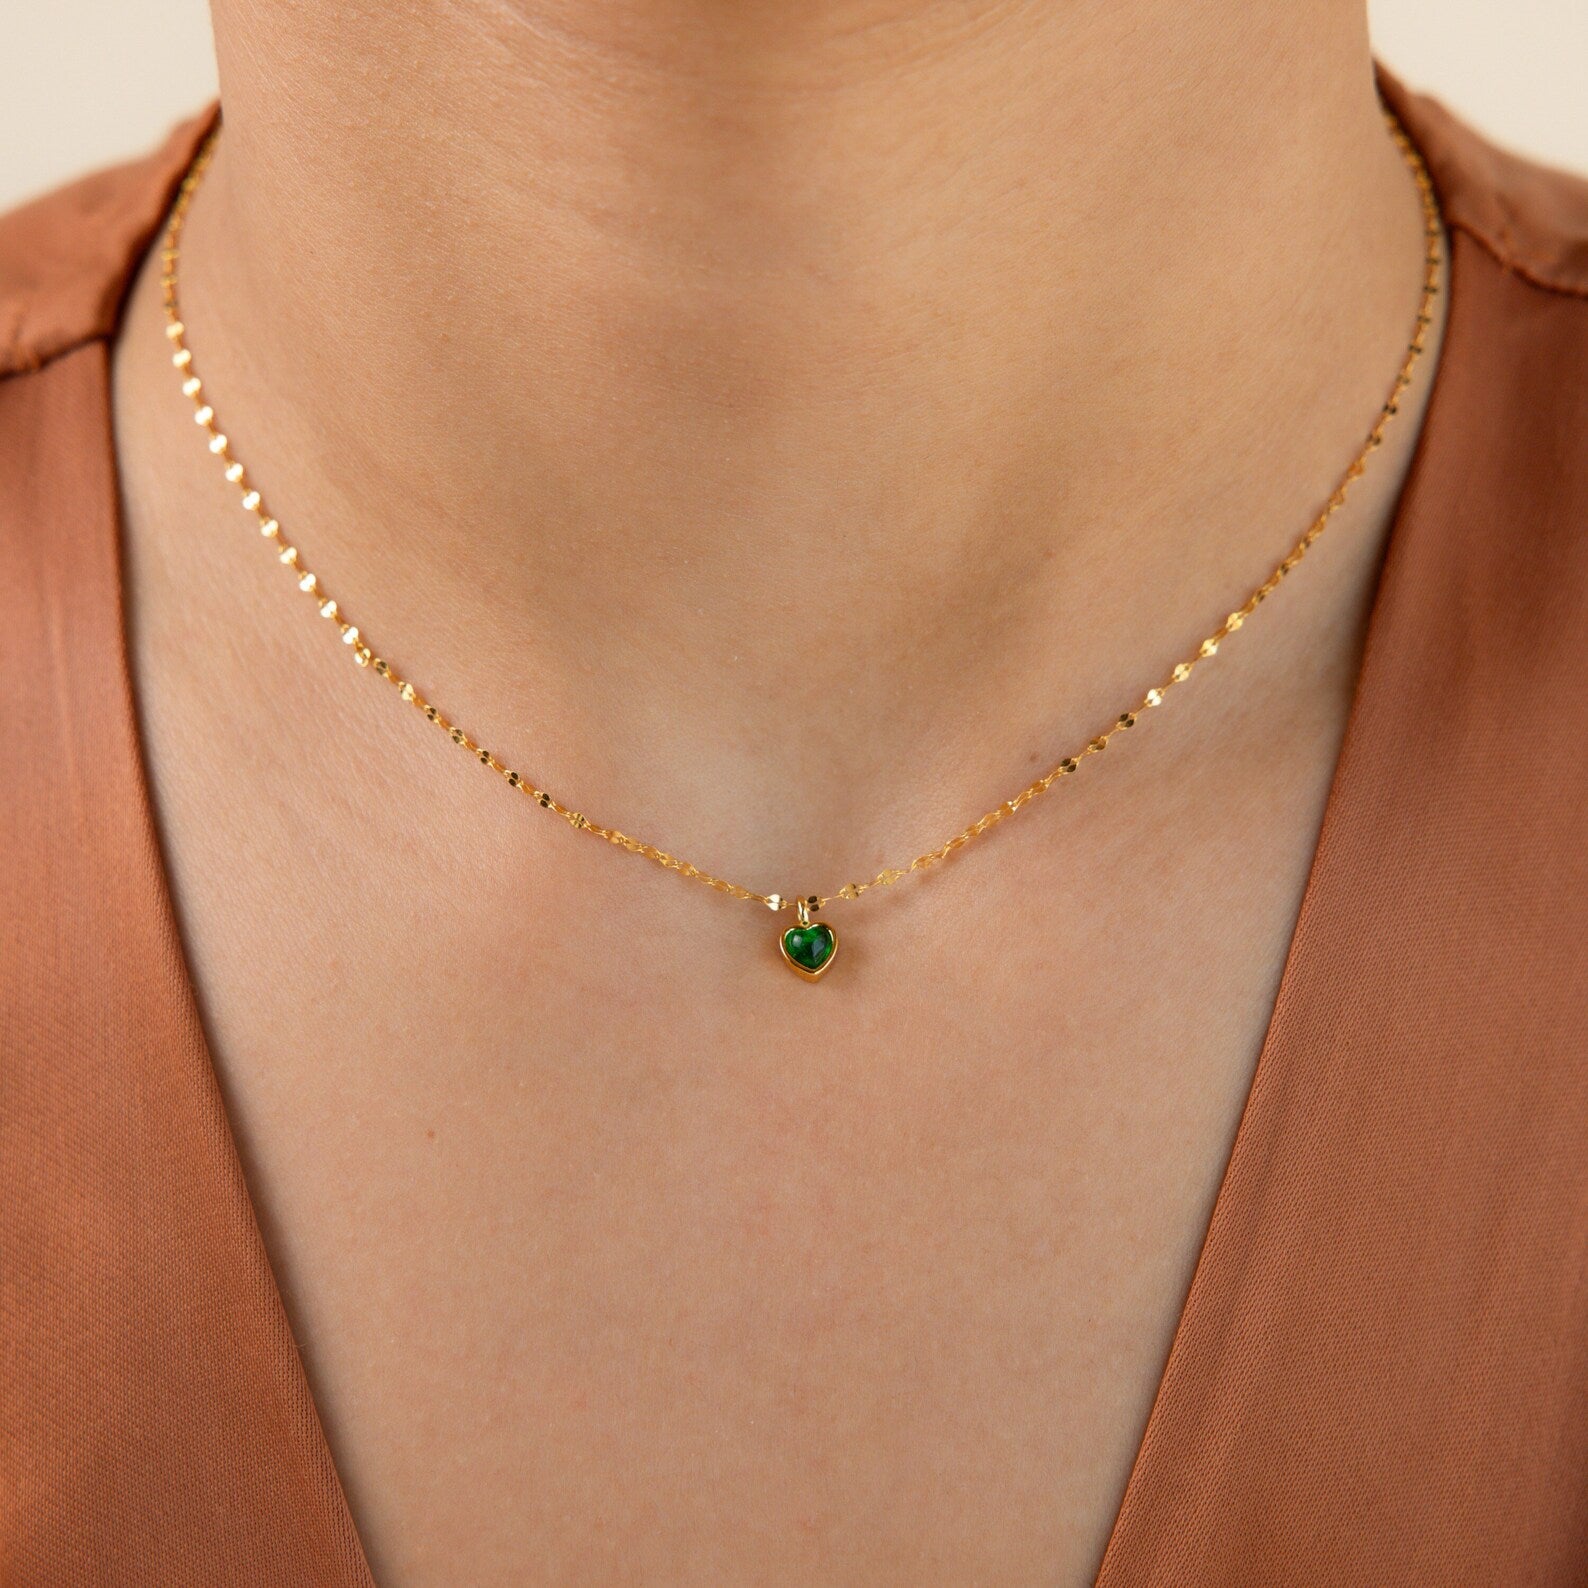 Tiny Jade Heart Necklace